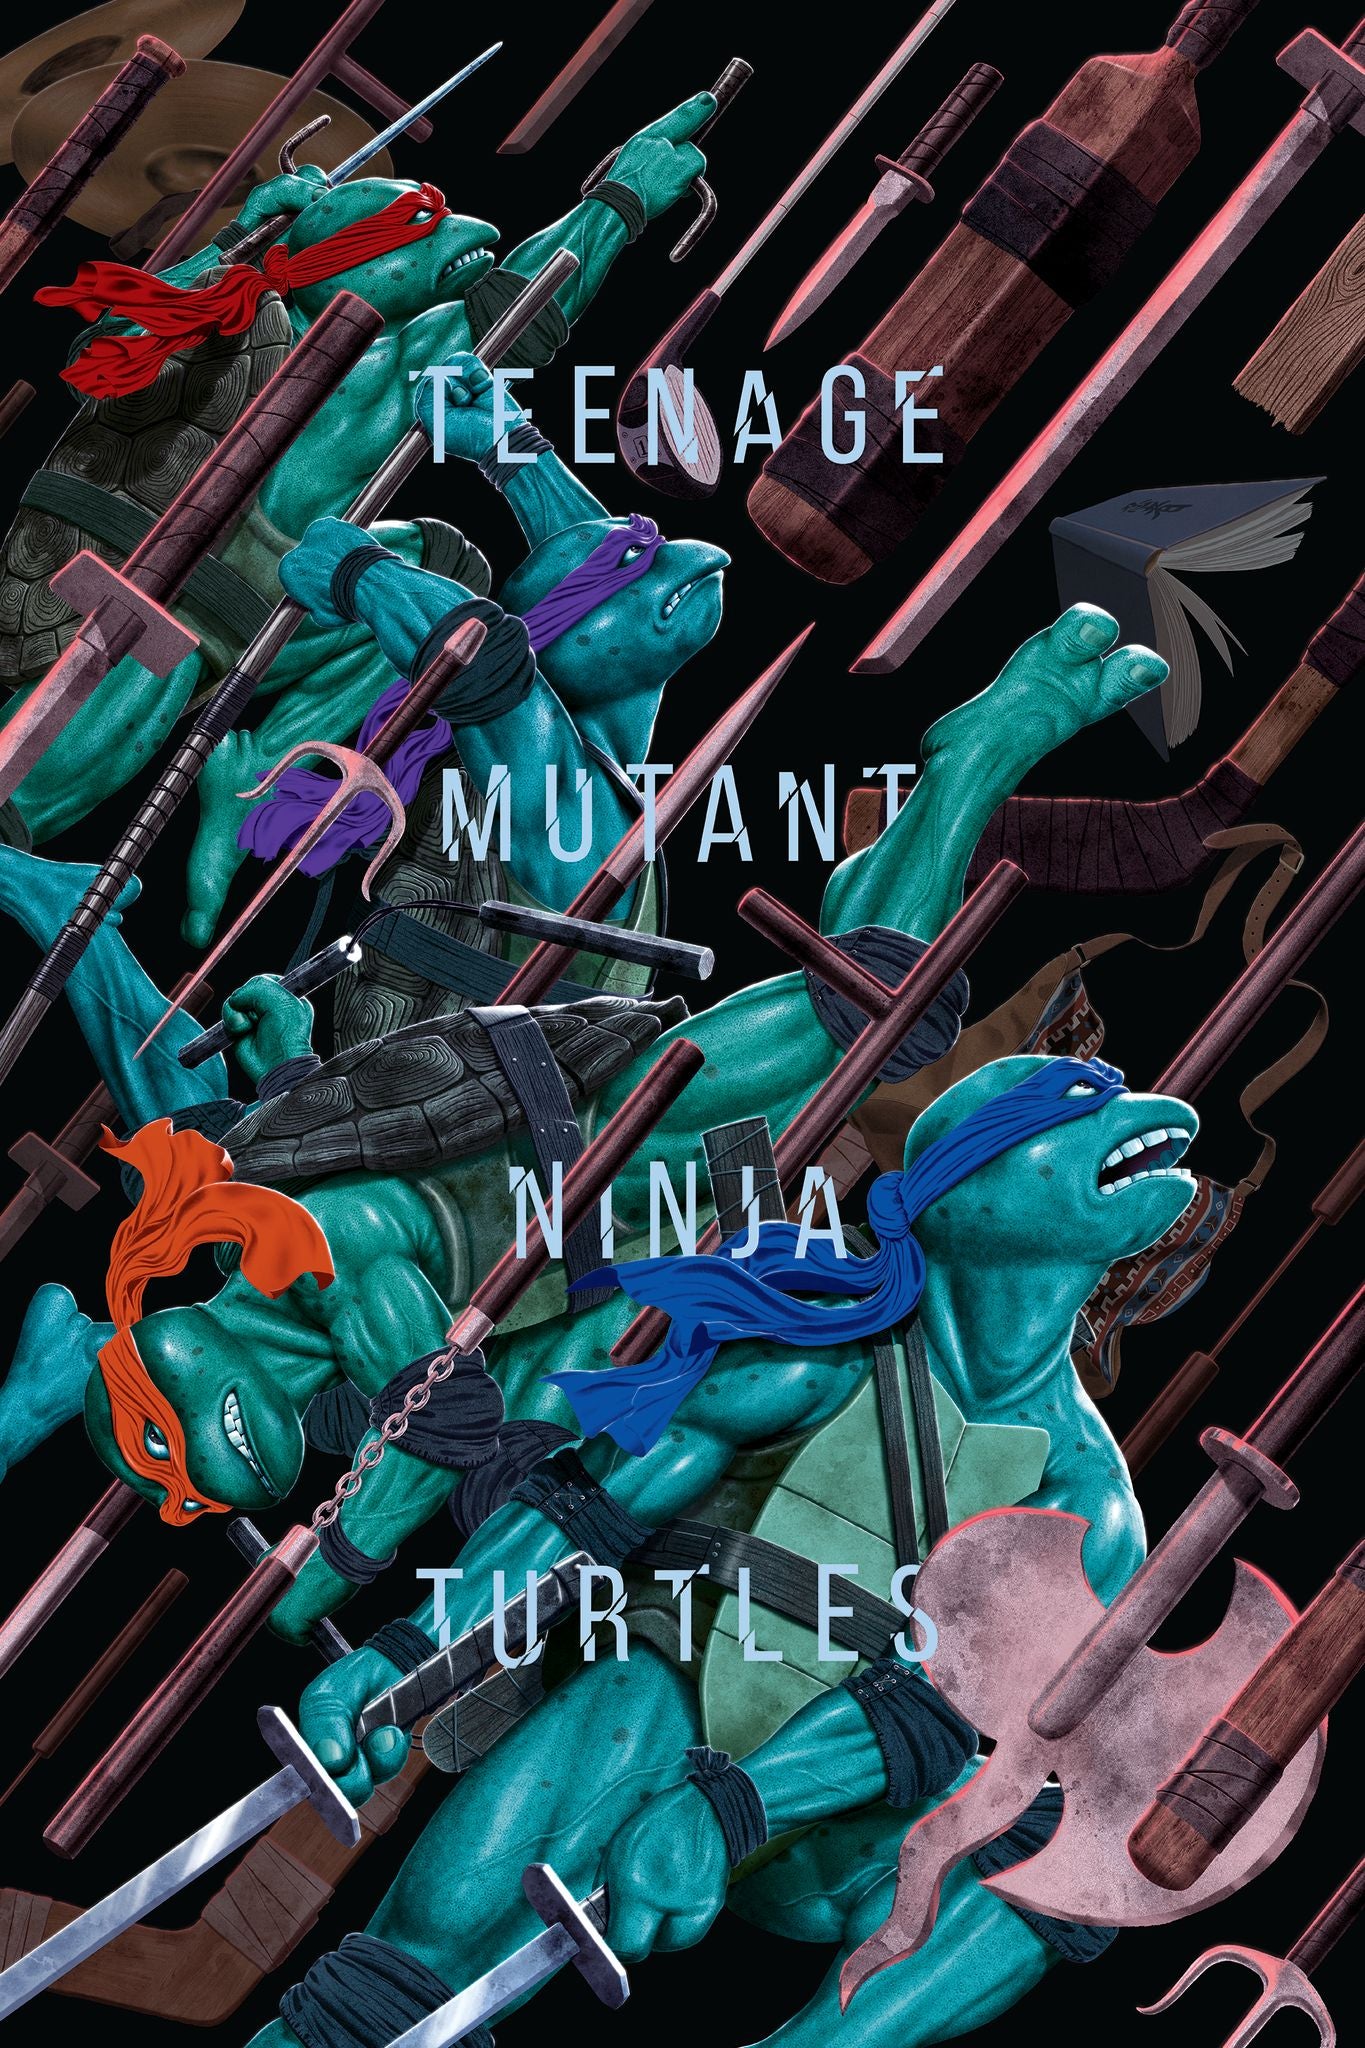 Jason Raish "Teenage Mutant Ninja Turtles"